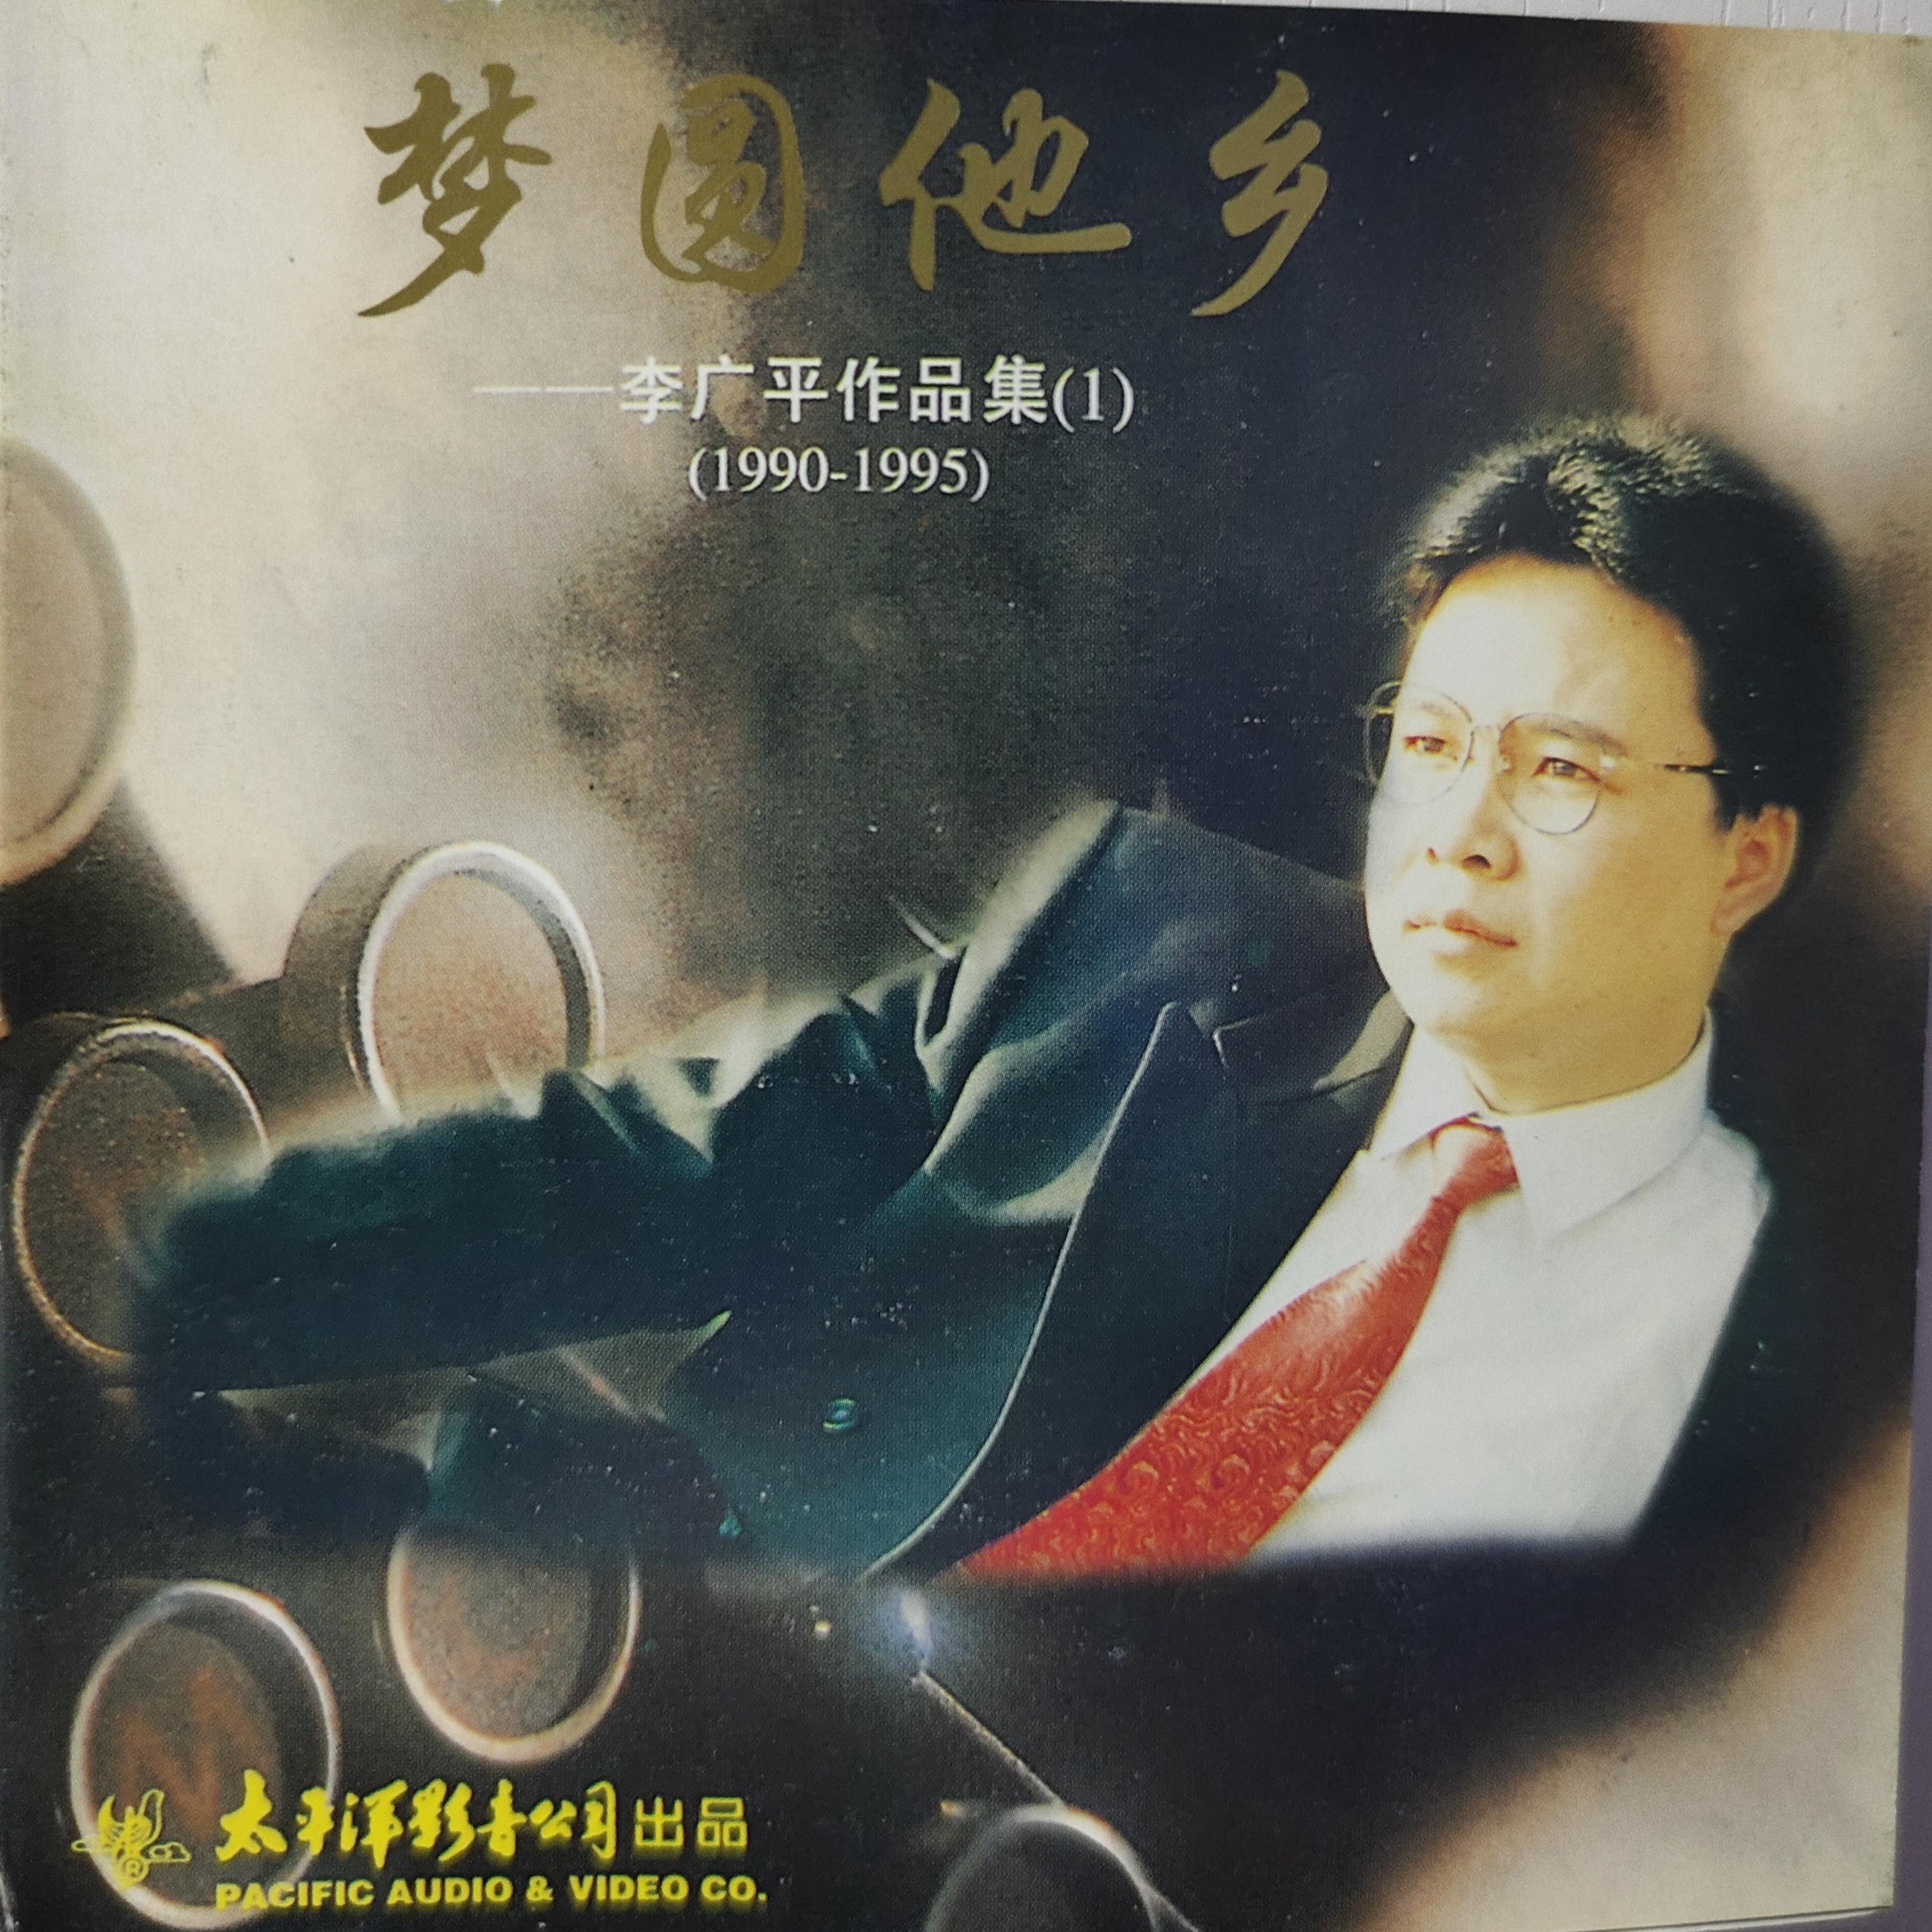 梦圆他乡——李广平作品集 (1) (1990—1995)